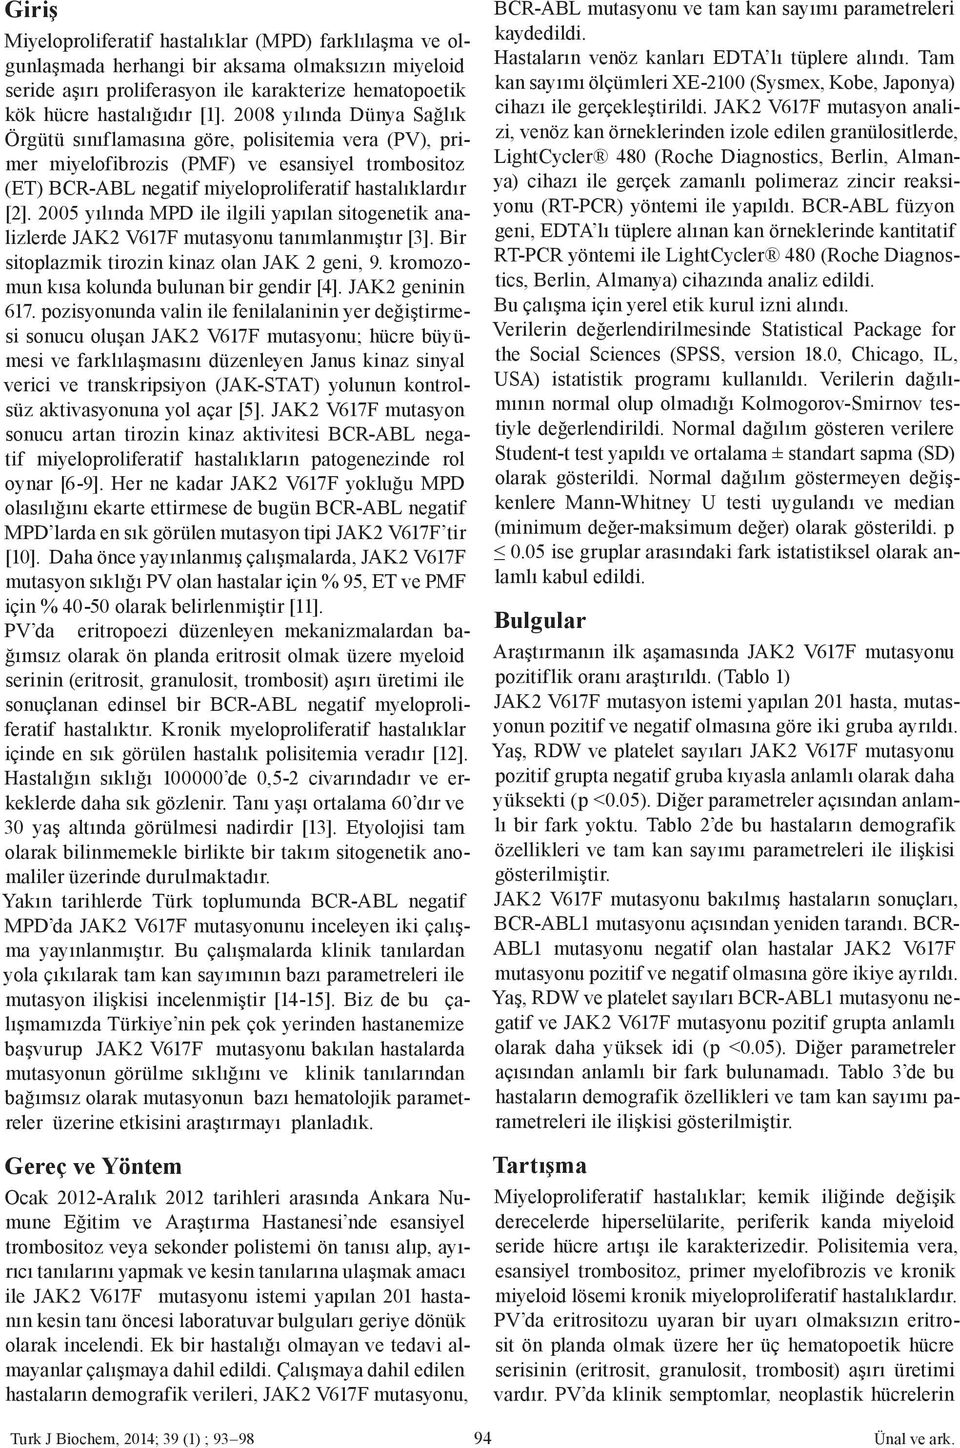 2005 yılında MPD ile ilgili yapılan sitogenetik analizlerde JAK2 V617F mutasyonu tanımlanmıştır [3]. Bir sitoplazmik tirozin kinaz olan JAK 2 geni, 9. kromozomun kısa kolunda bulunan bir gendir [4].